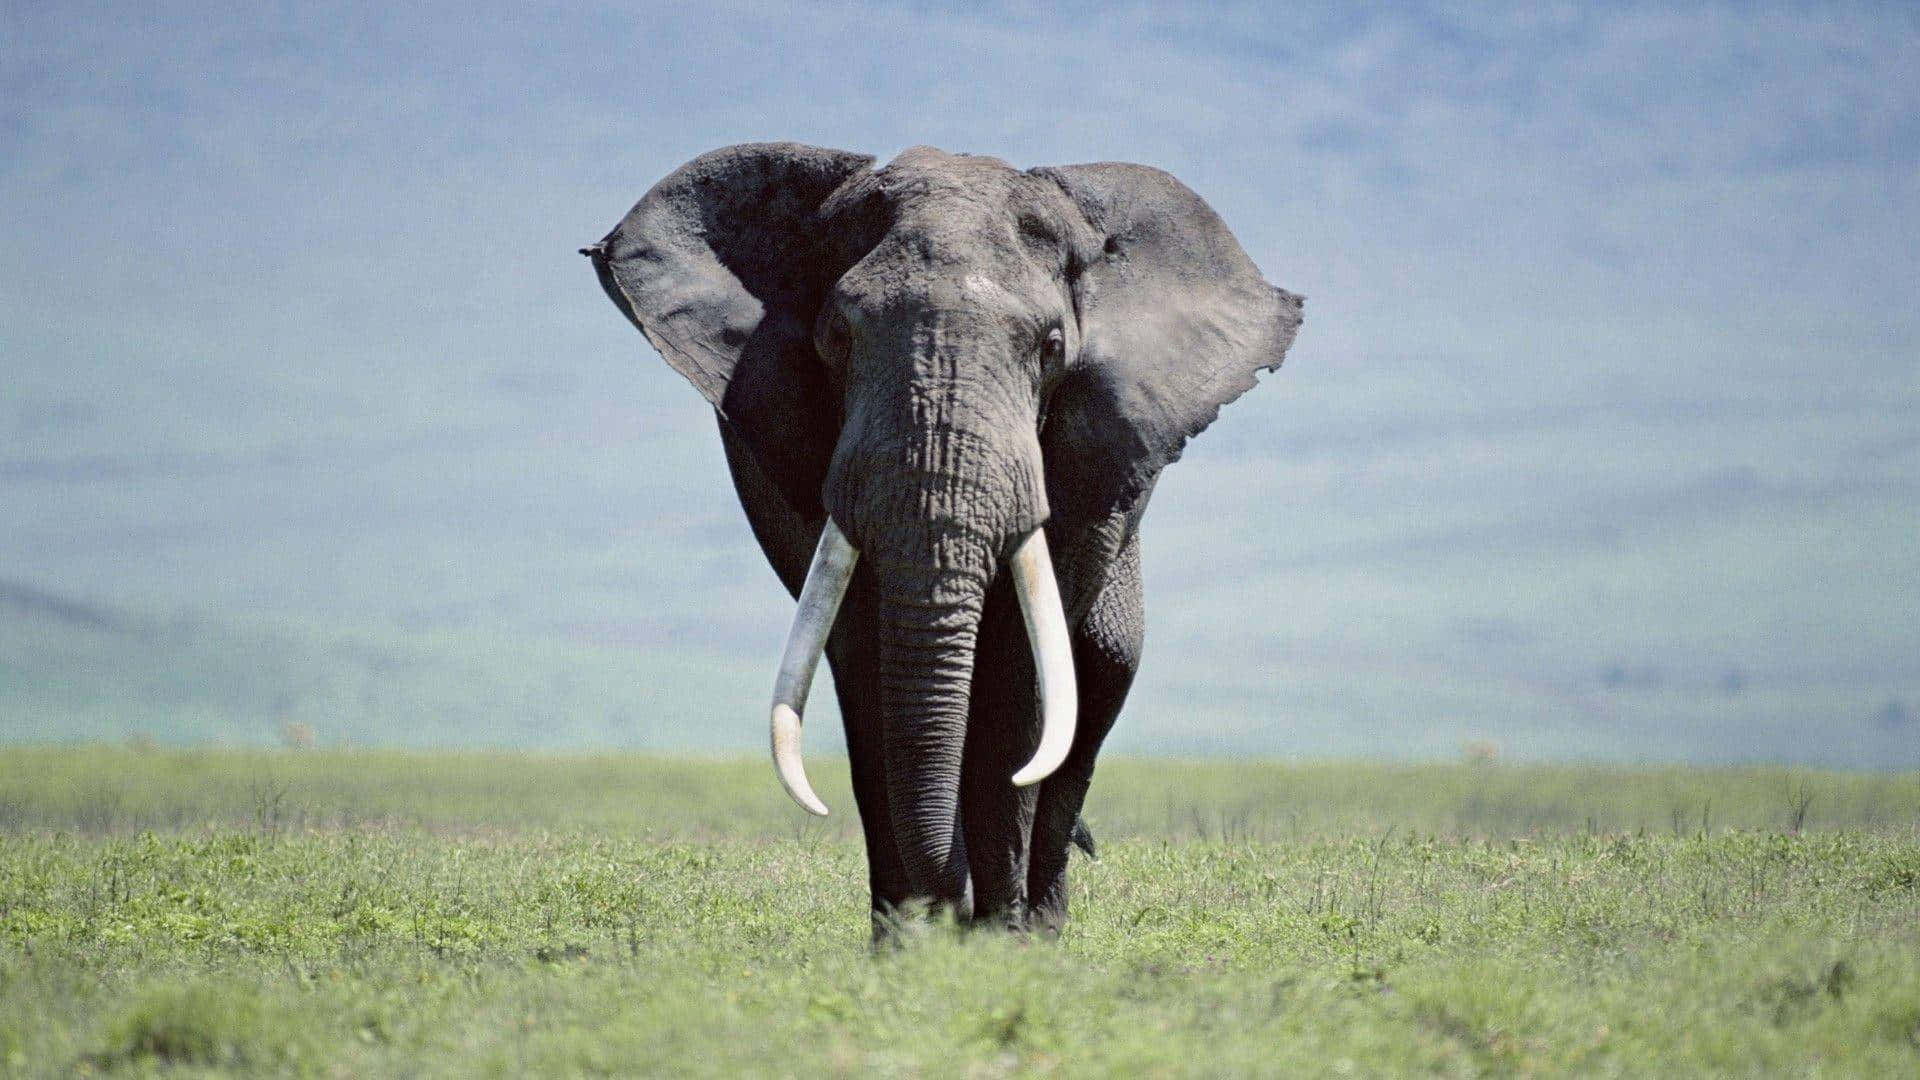 An Elephant Walking Across A Grassy Field Wallpaper